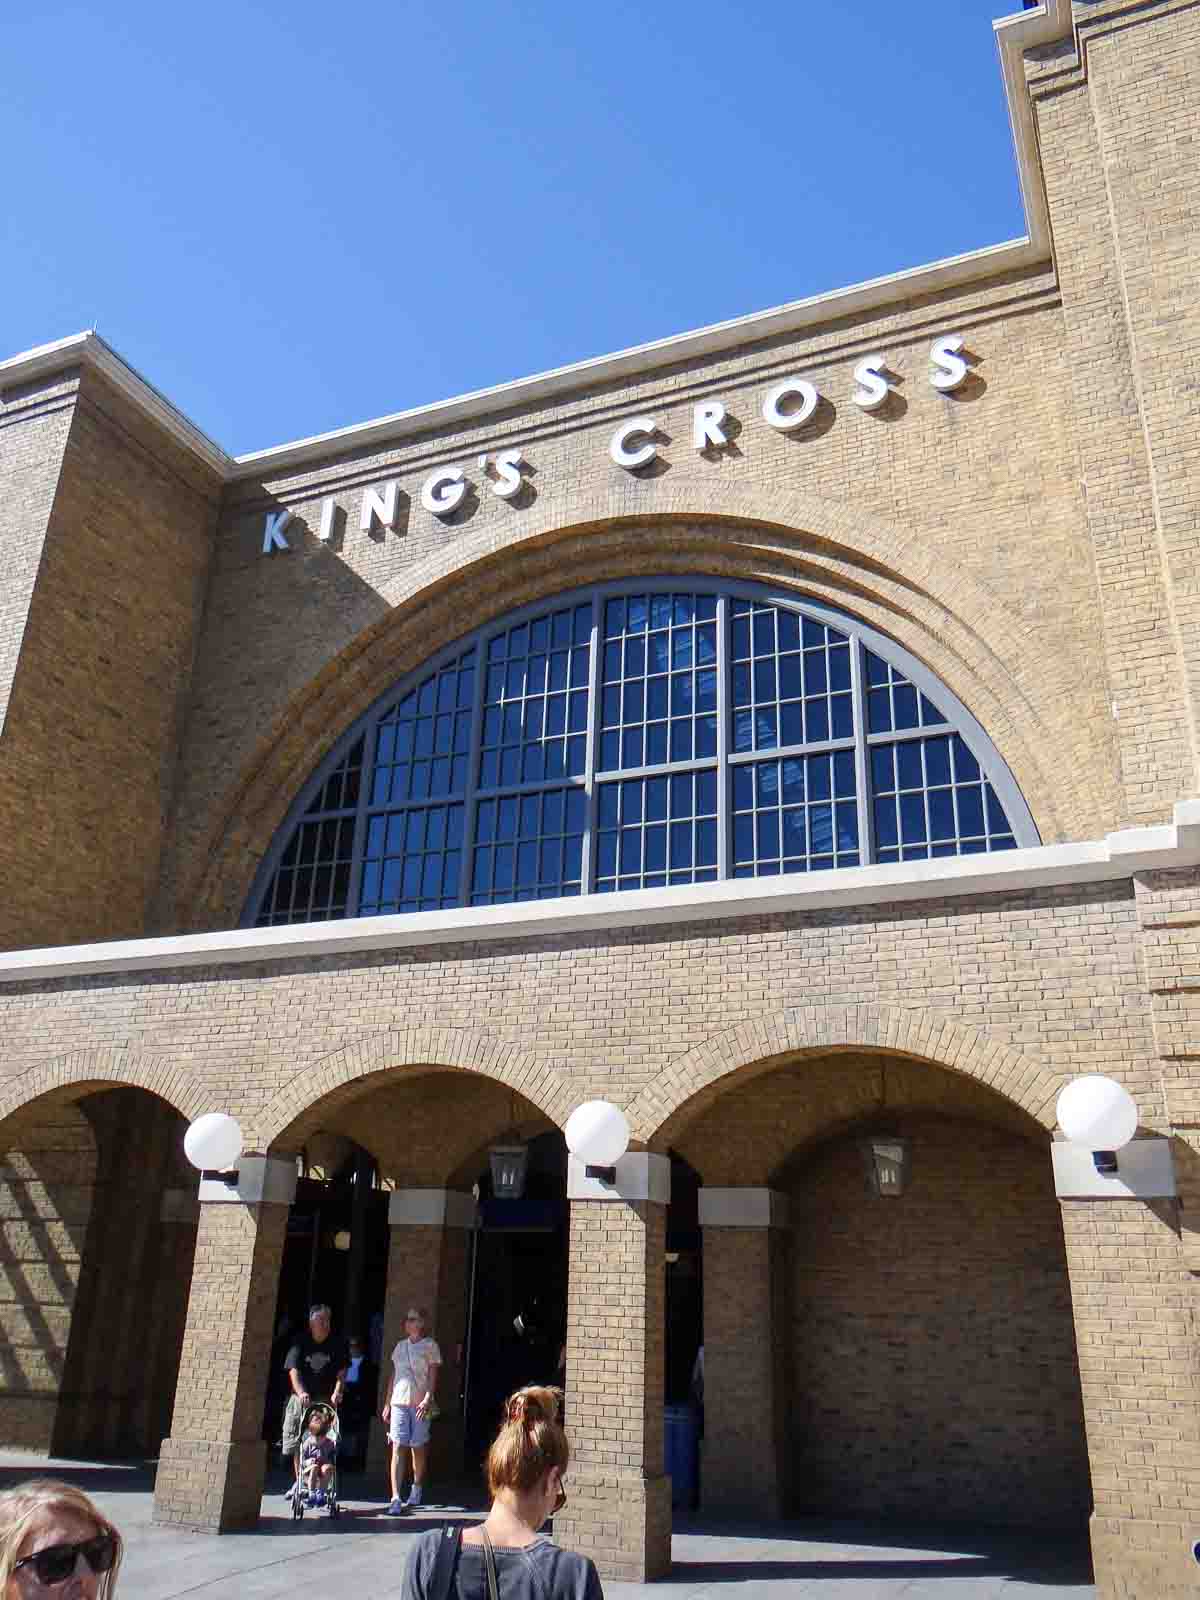 Estação Kings Cross Universal Orlando